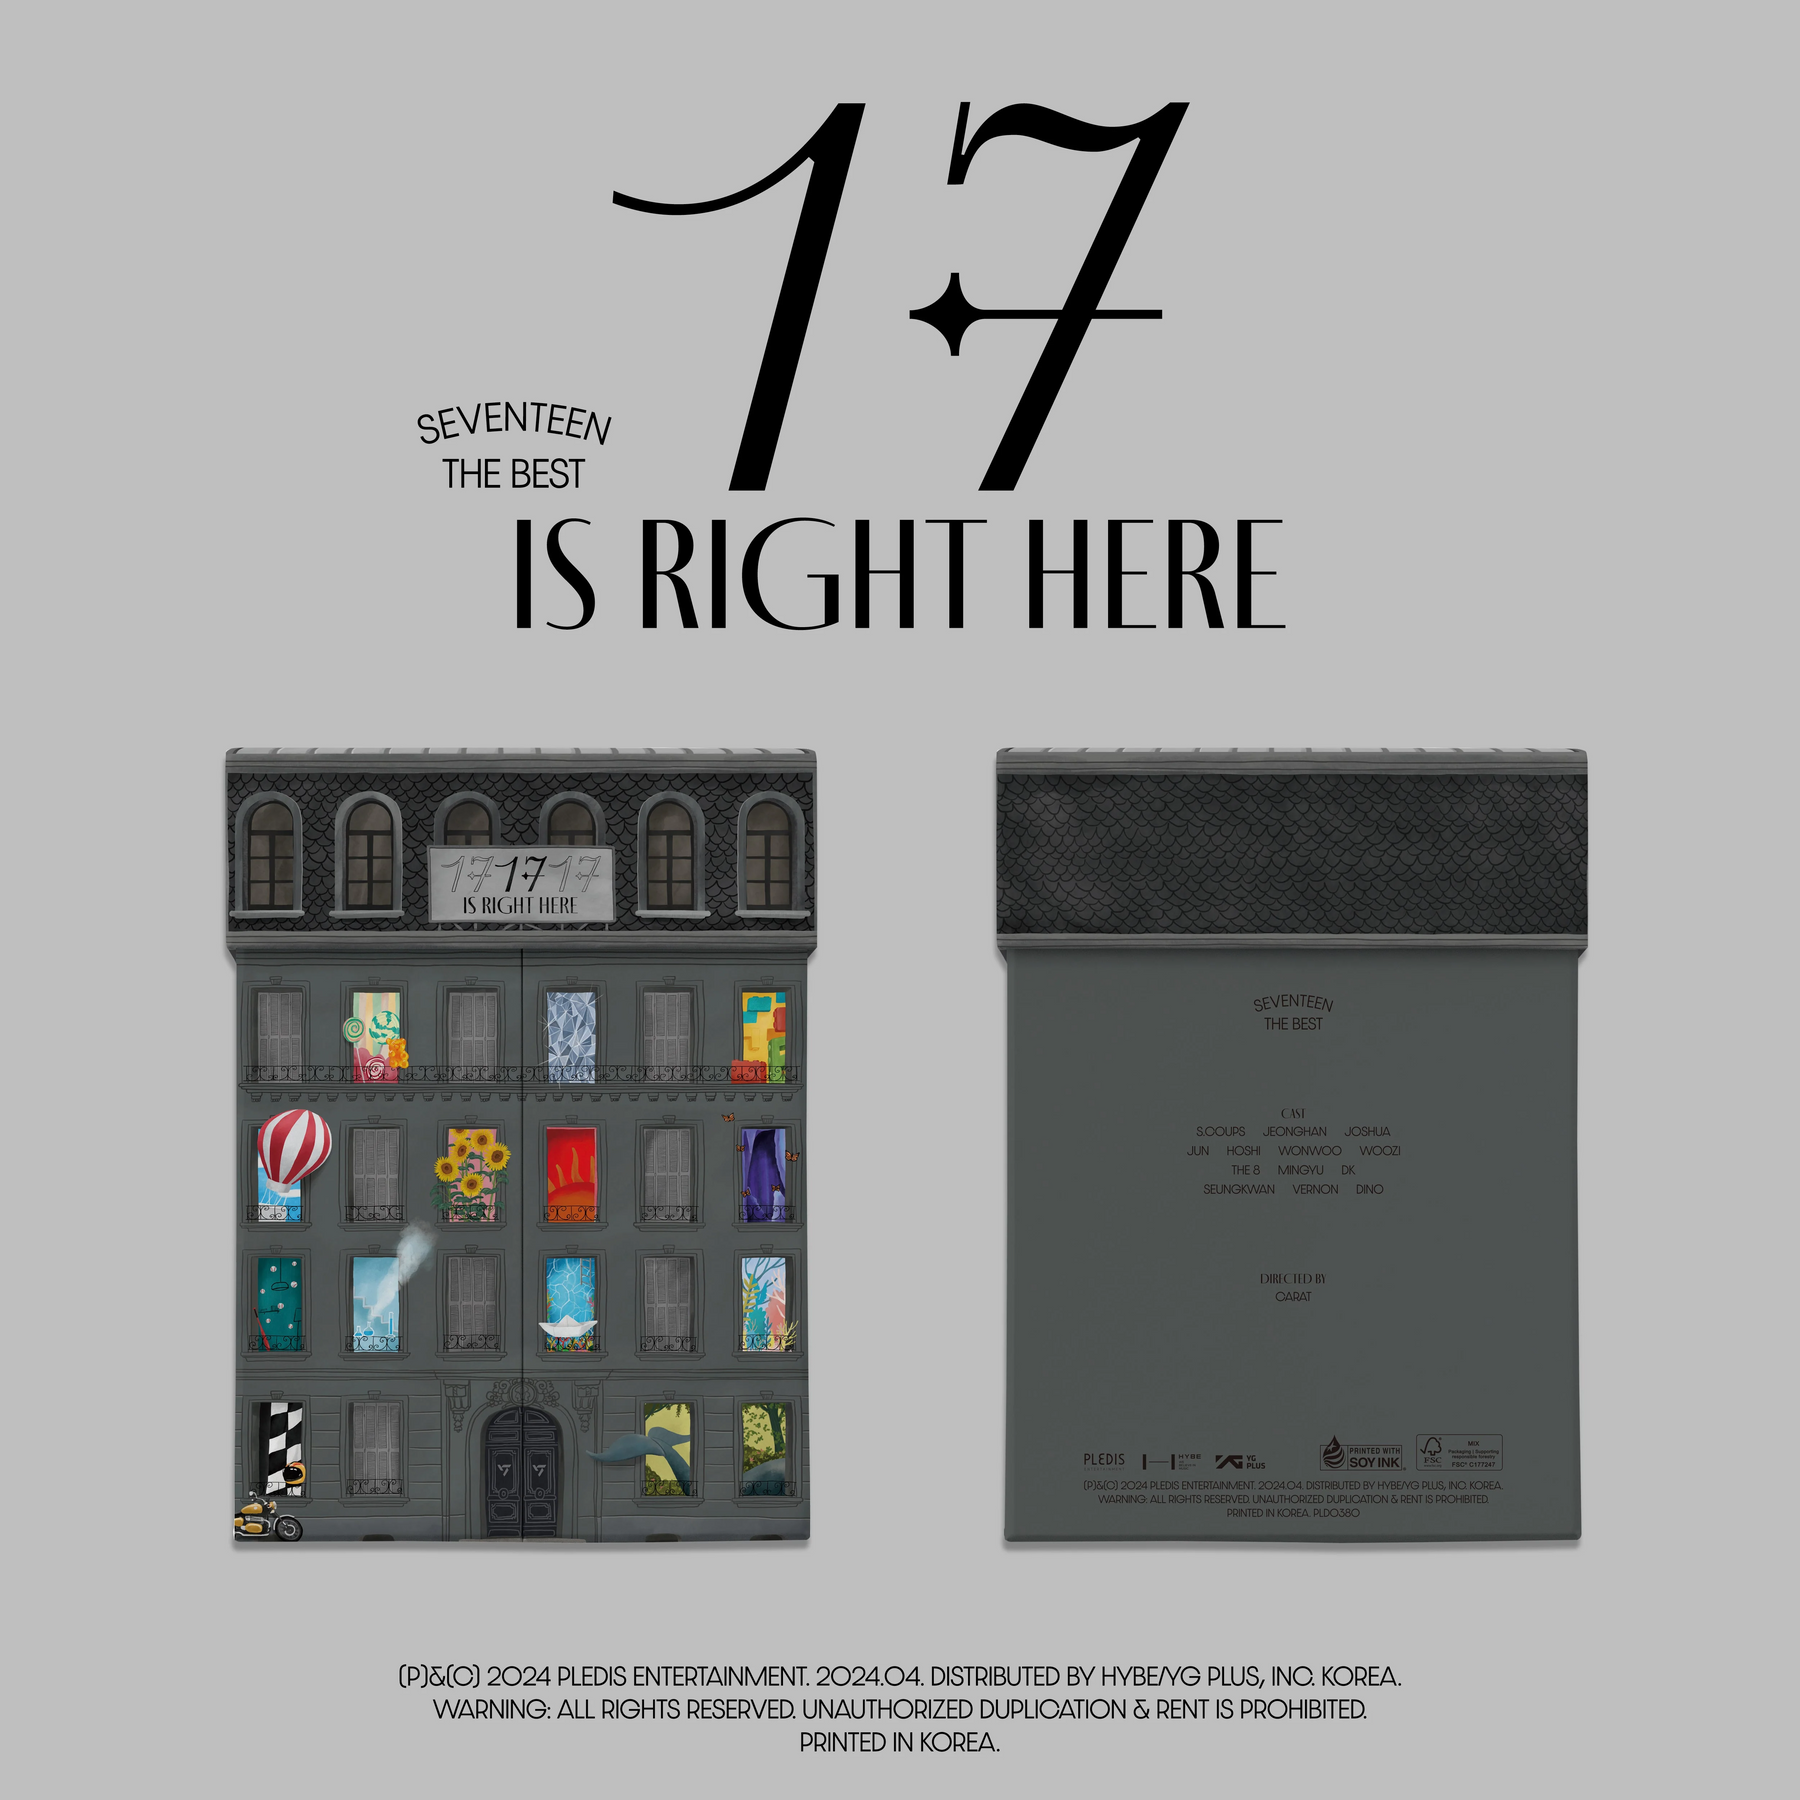 SEVENTEEN - BEST ALBUM “17 IS RIGHT HERE”